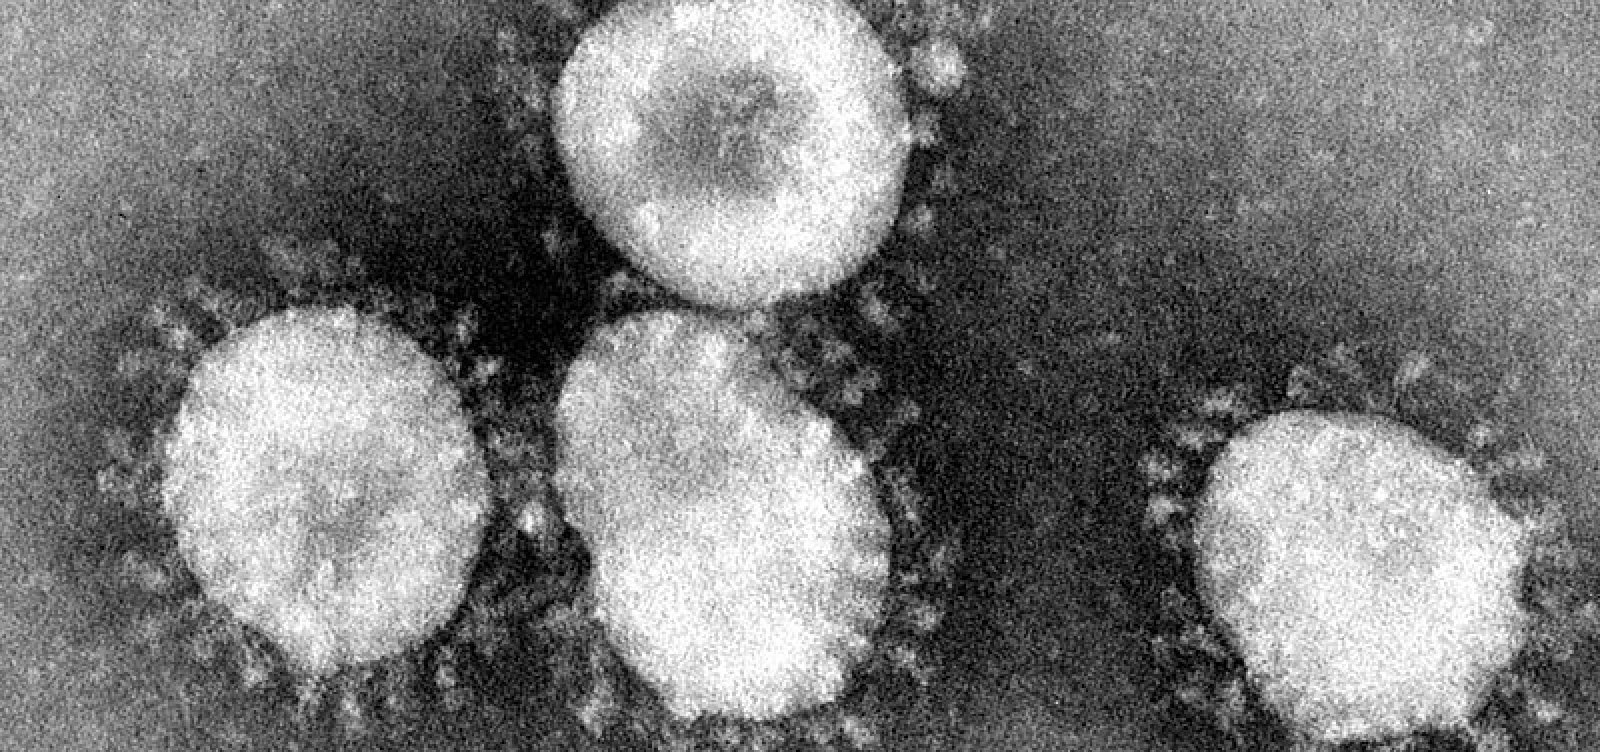 Homem que tinha suspeita de coronavírus na Bahia é diagnosticado com Influenza A